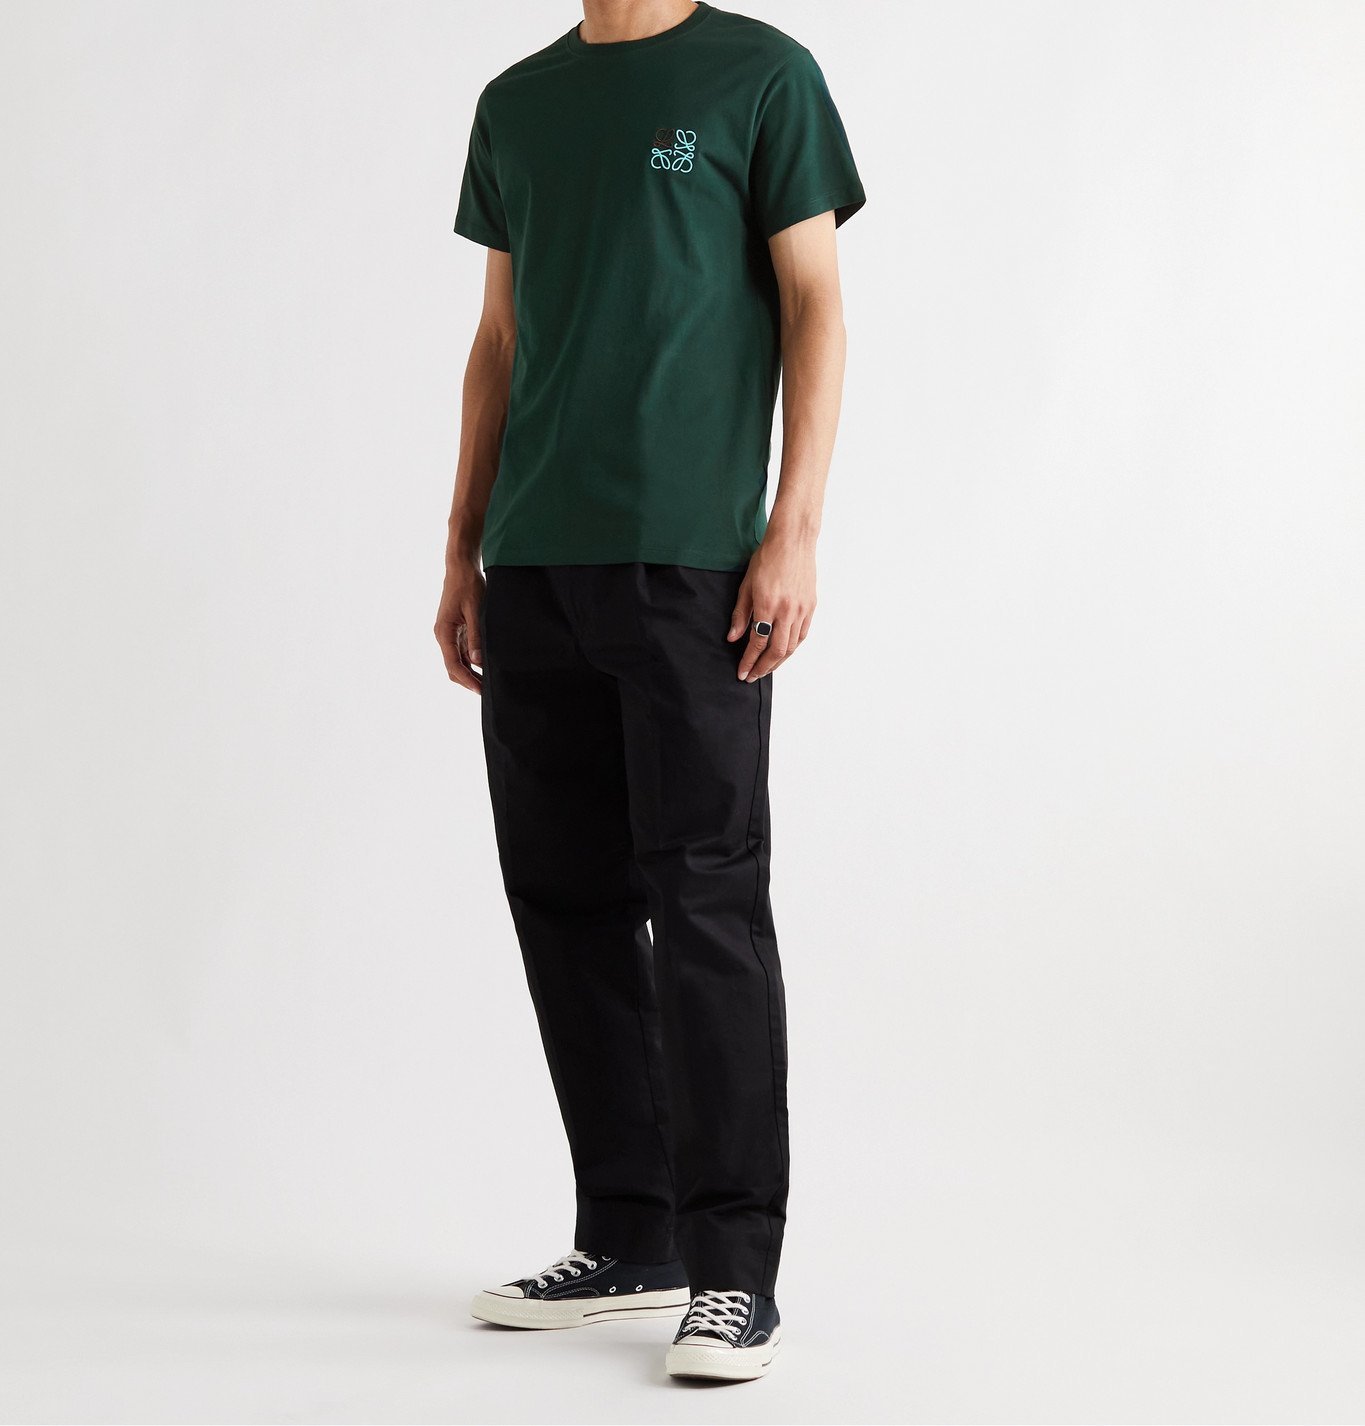 LOEWE - Logo-Embroidered Cotton-Jersey T-Shirt - Green Loewe